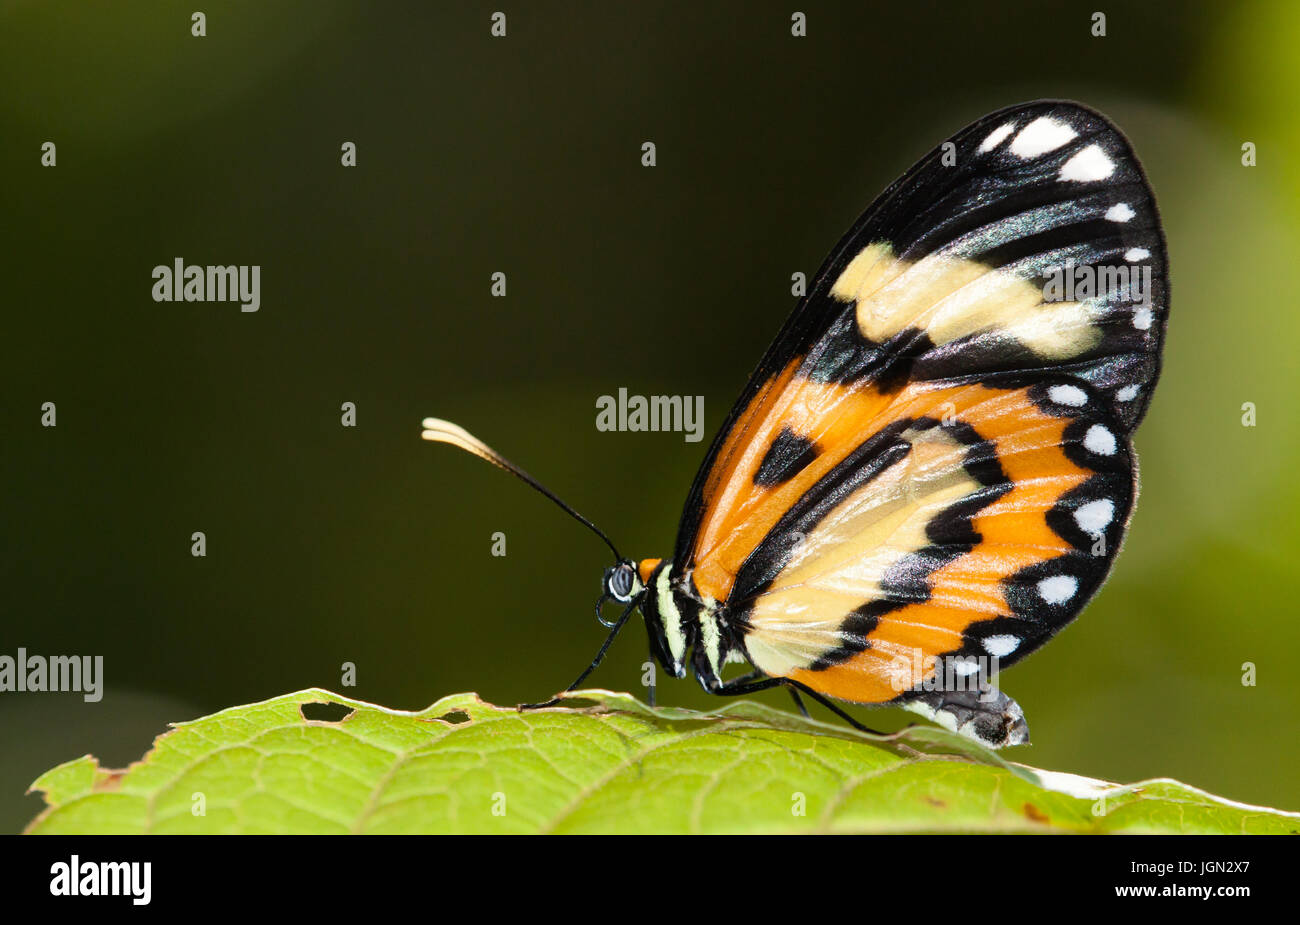 Schmetterling auf einem Blatt Makroaufnahme gegen dunkelgrünen Hintergrund Stockfoto